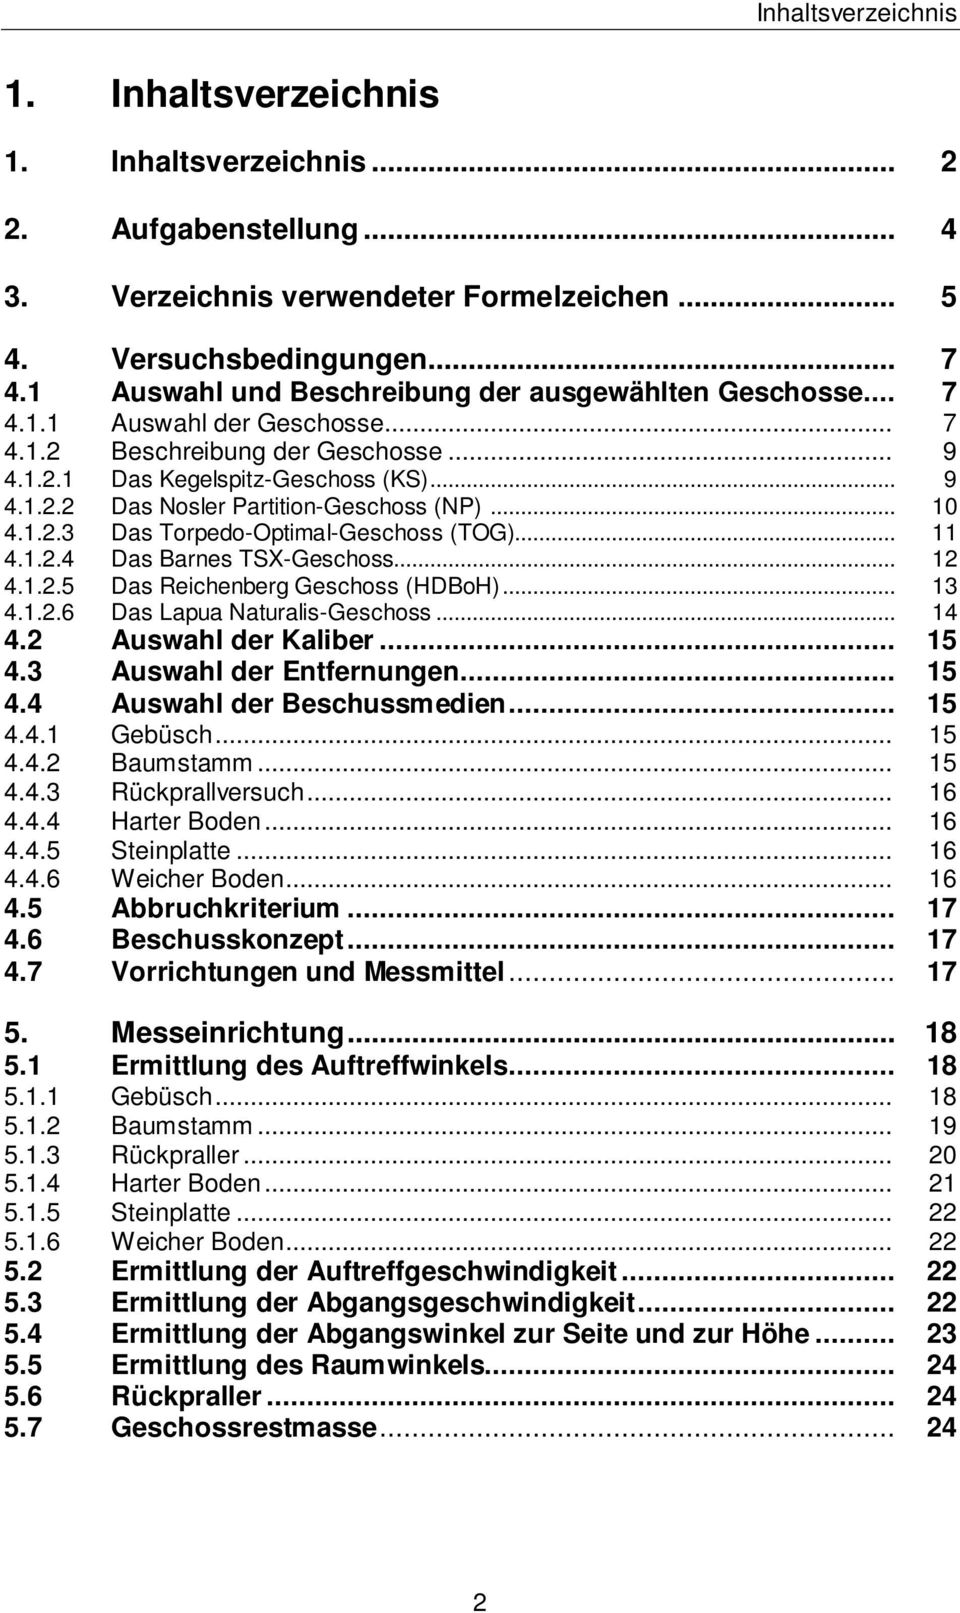 .. 10 4.1.2.3 Das Torpedo-Optimal-Geschoss (TOG)... 11 4.1.2.4 Das Barnes TSX-Geschoss... 12 4.1.2.5 Das Reichenberg Geschoss (HDBoH)... 13 4.1.2.6 Das Lapua Naturalis-Geschoss... 14 4.